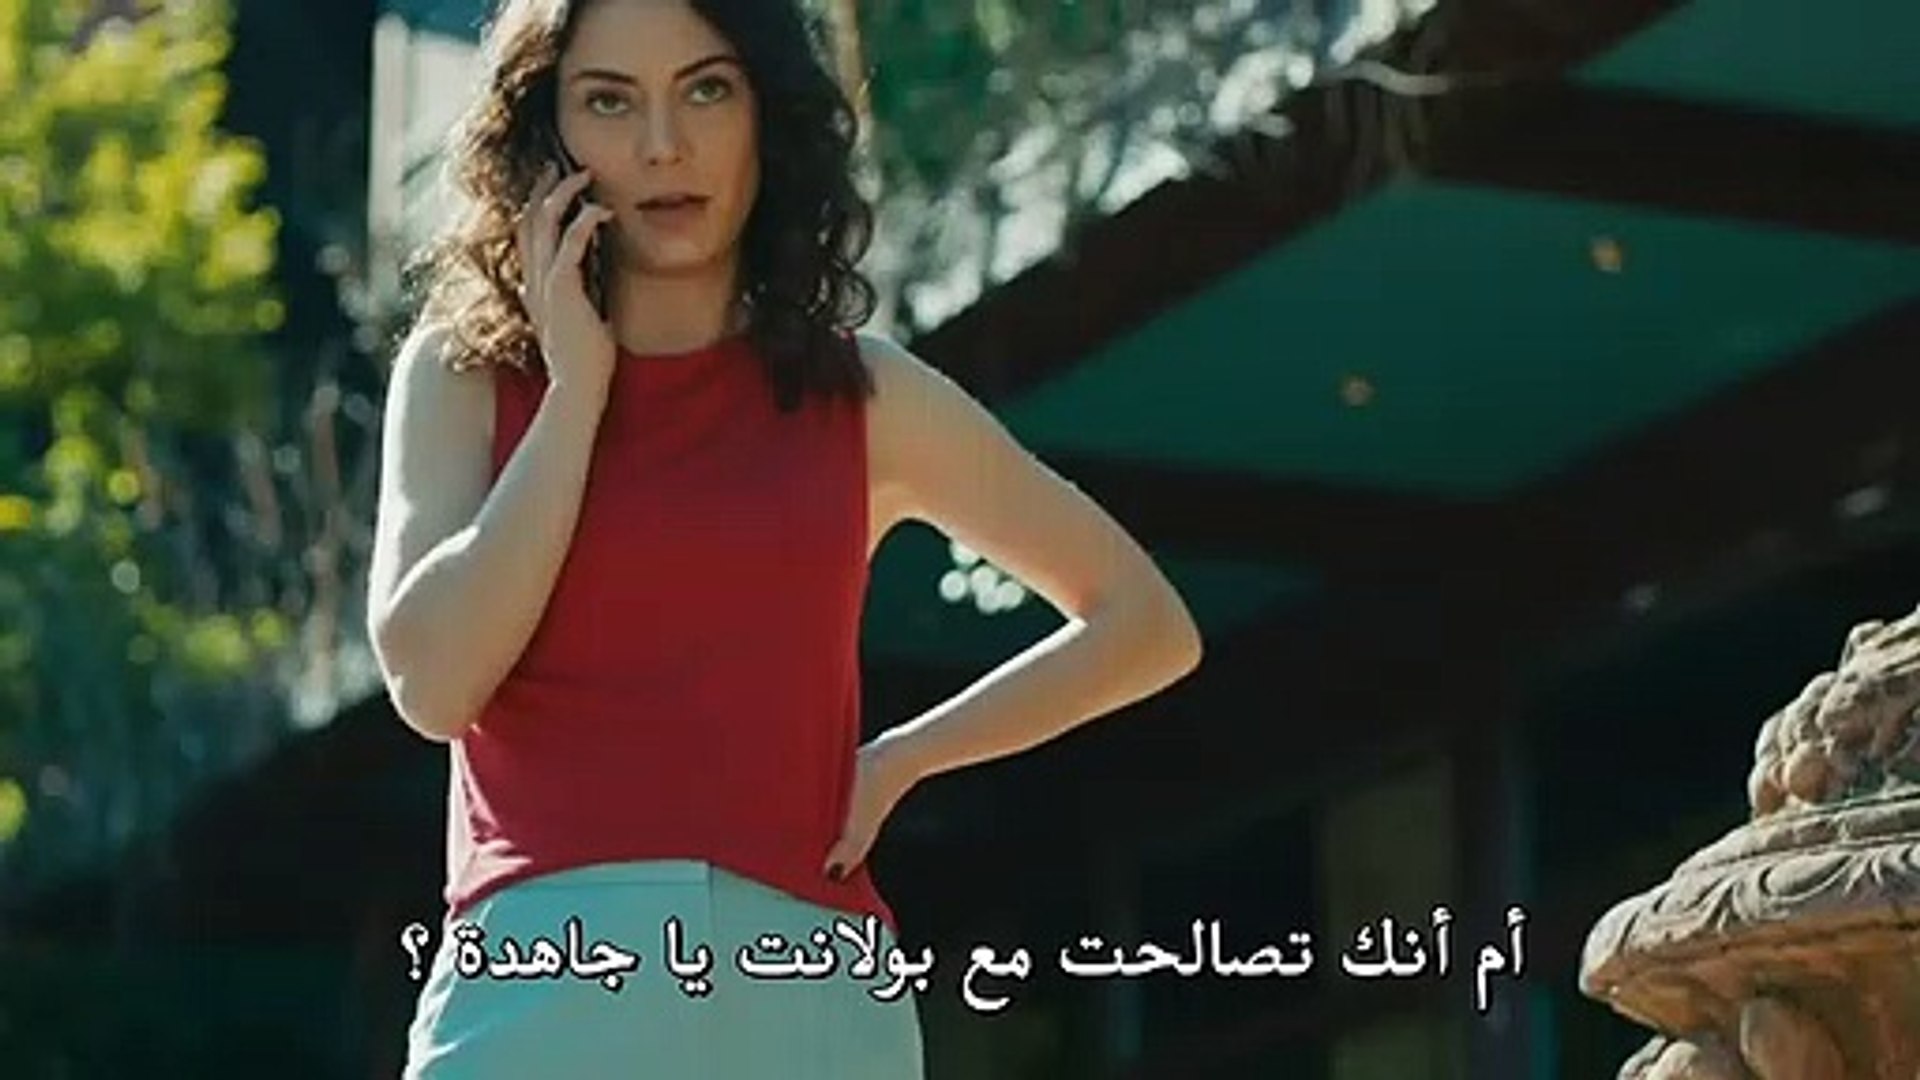 مسلسل جسور و الجميلة مترجم للعربية الحلقة 27 القسم 2 Video Dailymotion